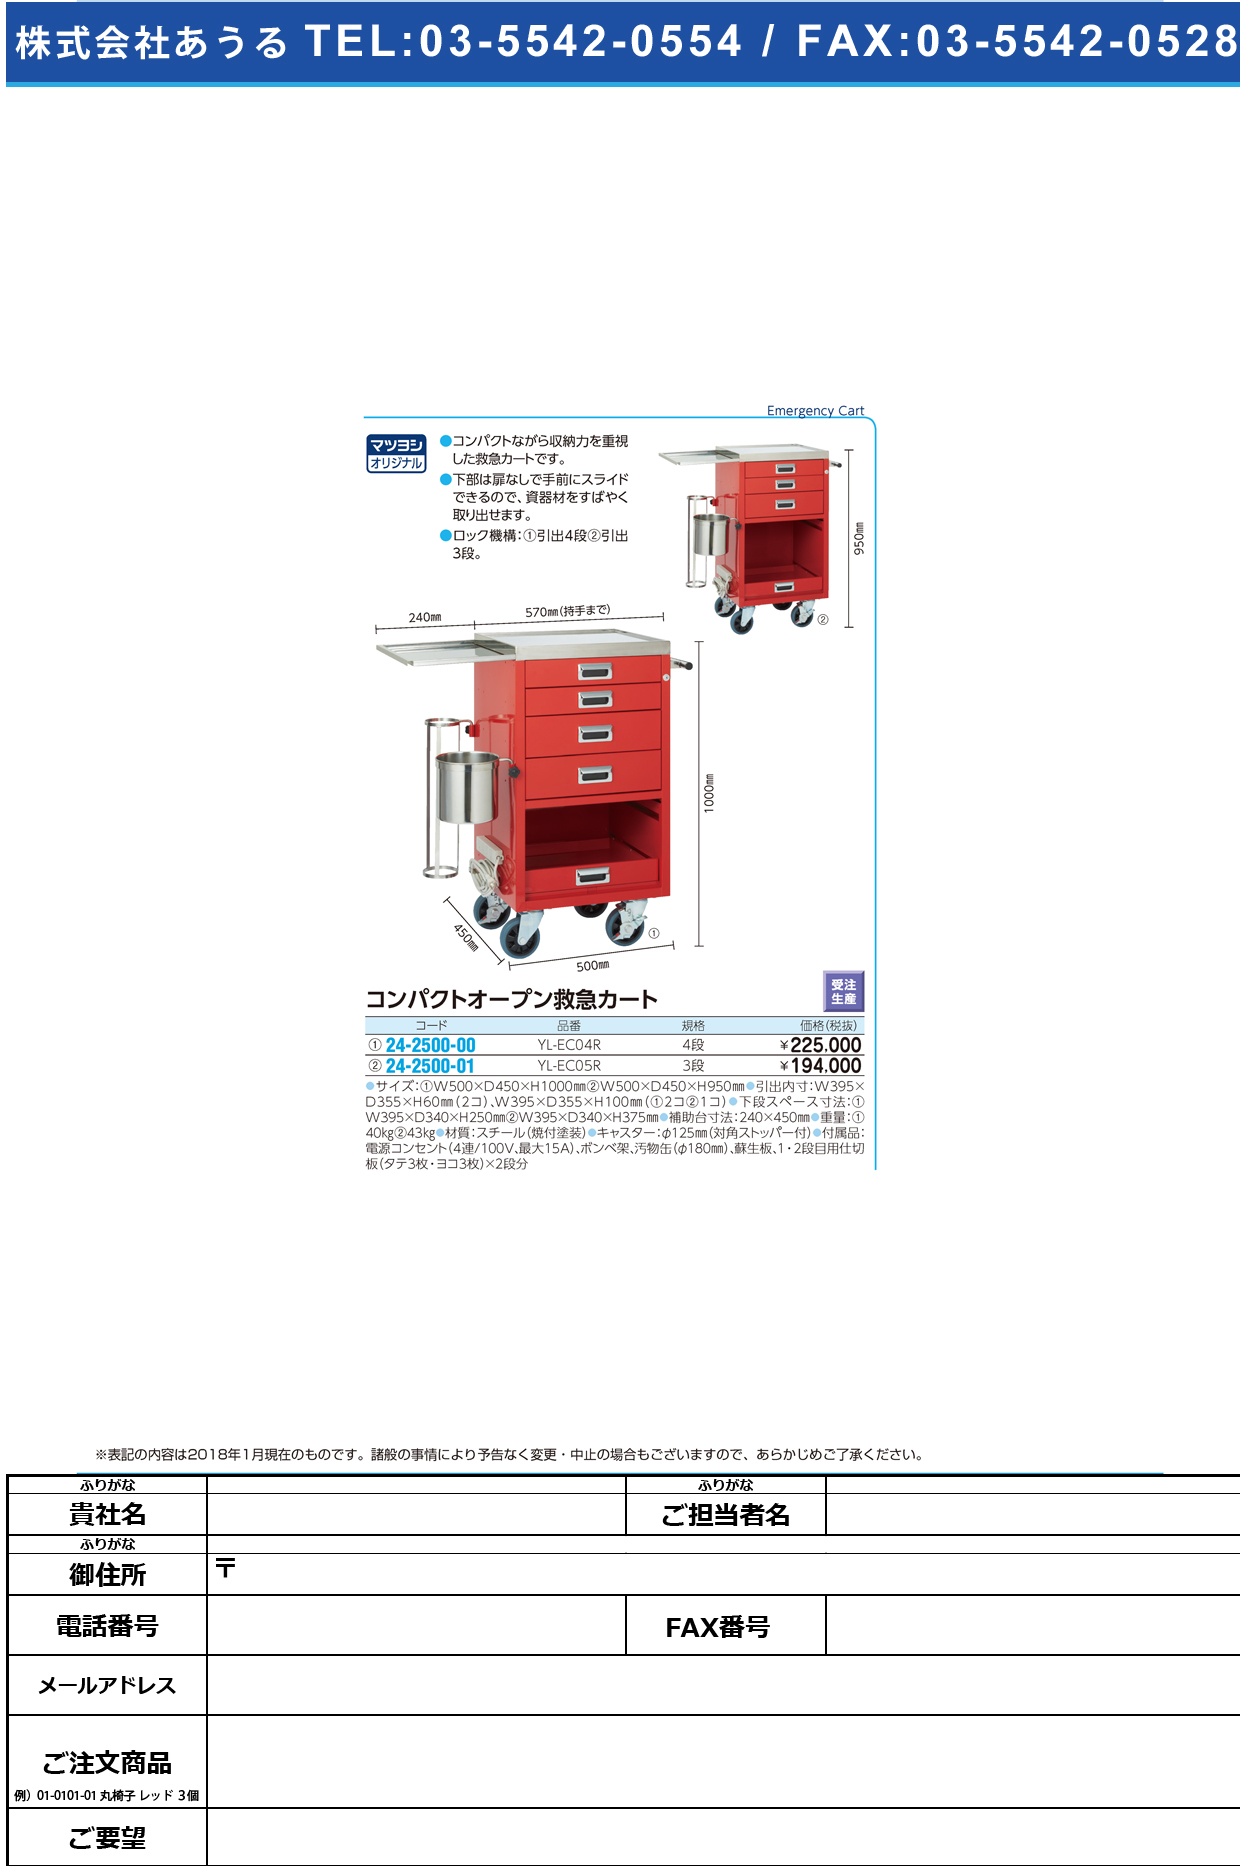 (24-2500-00)コンパクトオープン救急カート（４段） YL-EC04R ｺﾝﾊﾟｸﾄｵｰﾌﾟﾝｷｭｳｷｭｳｶｰﾄ【1台単位】【2019年カタログ商品】